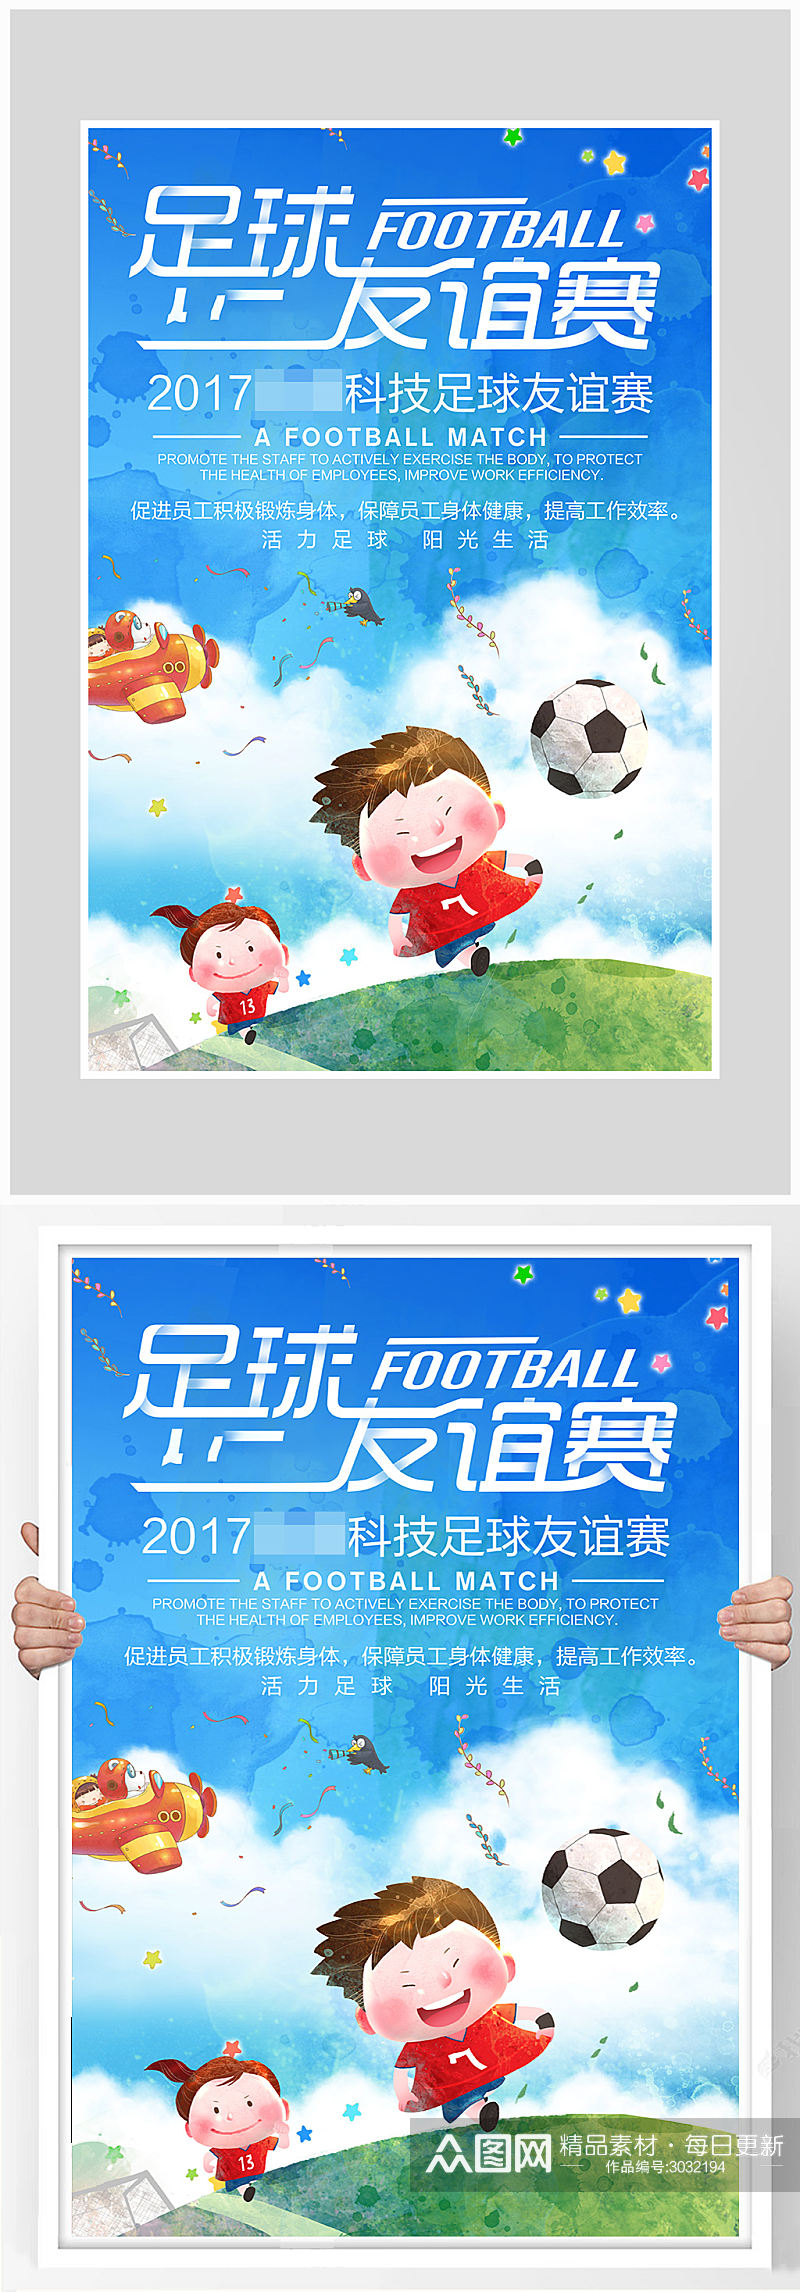 卡通世界杯足球比赛海报设计素材